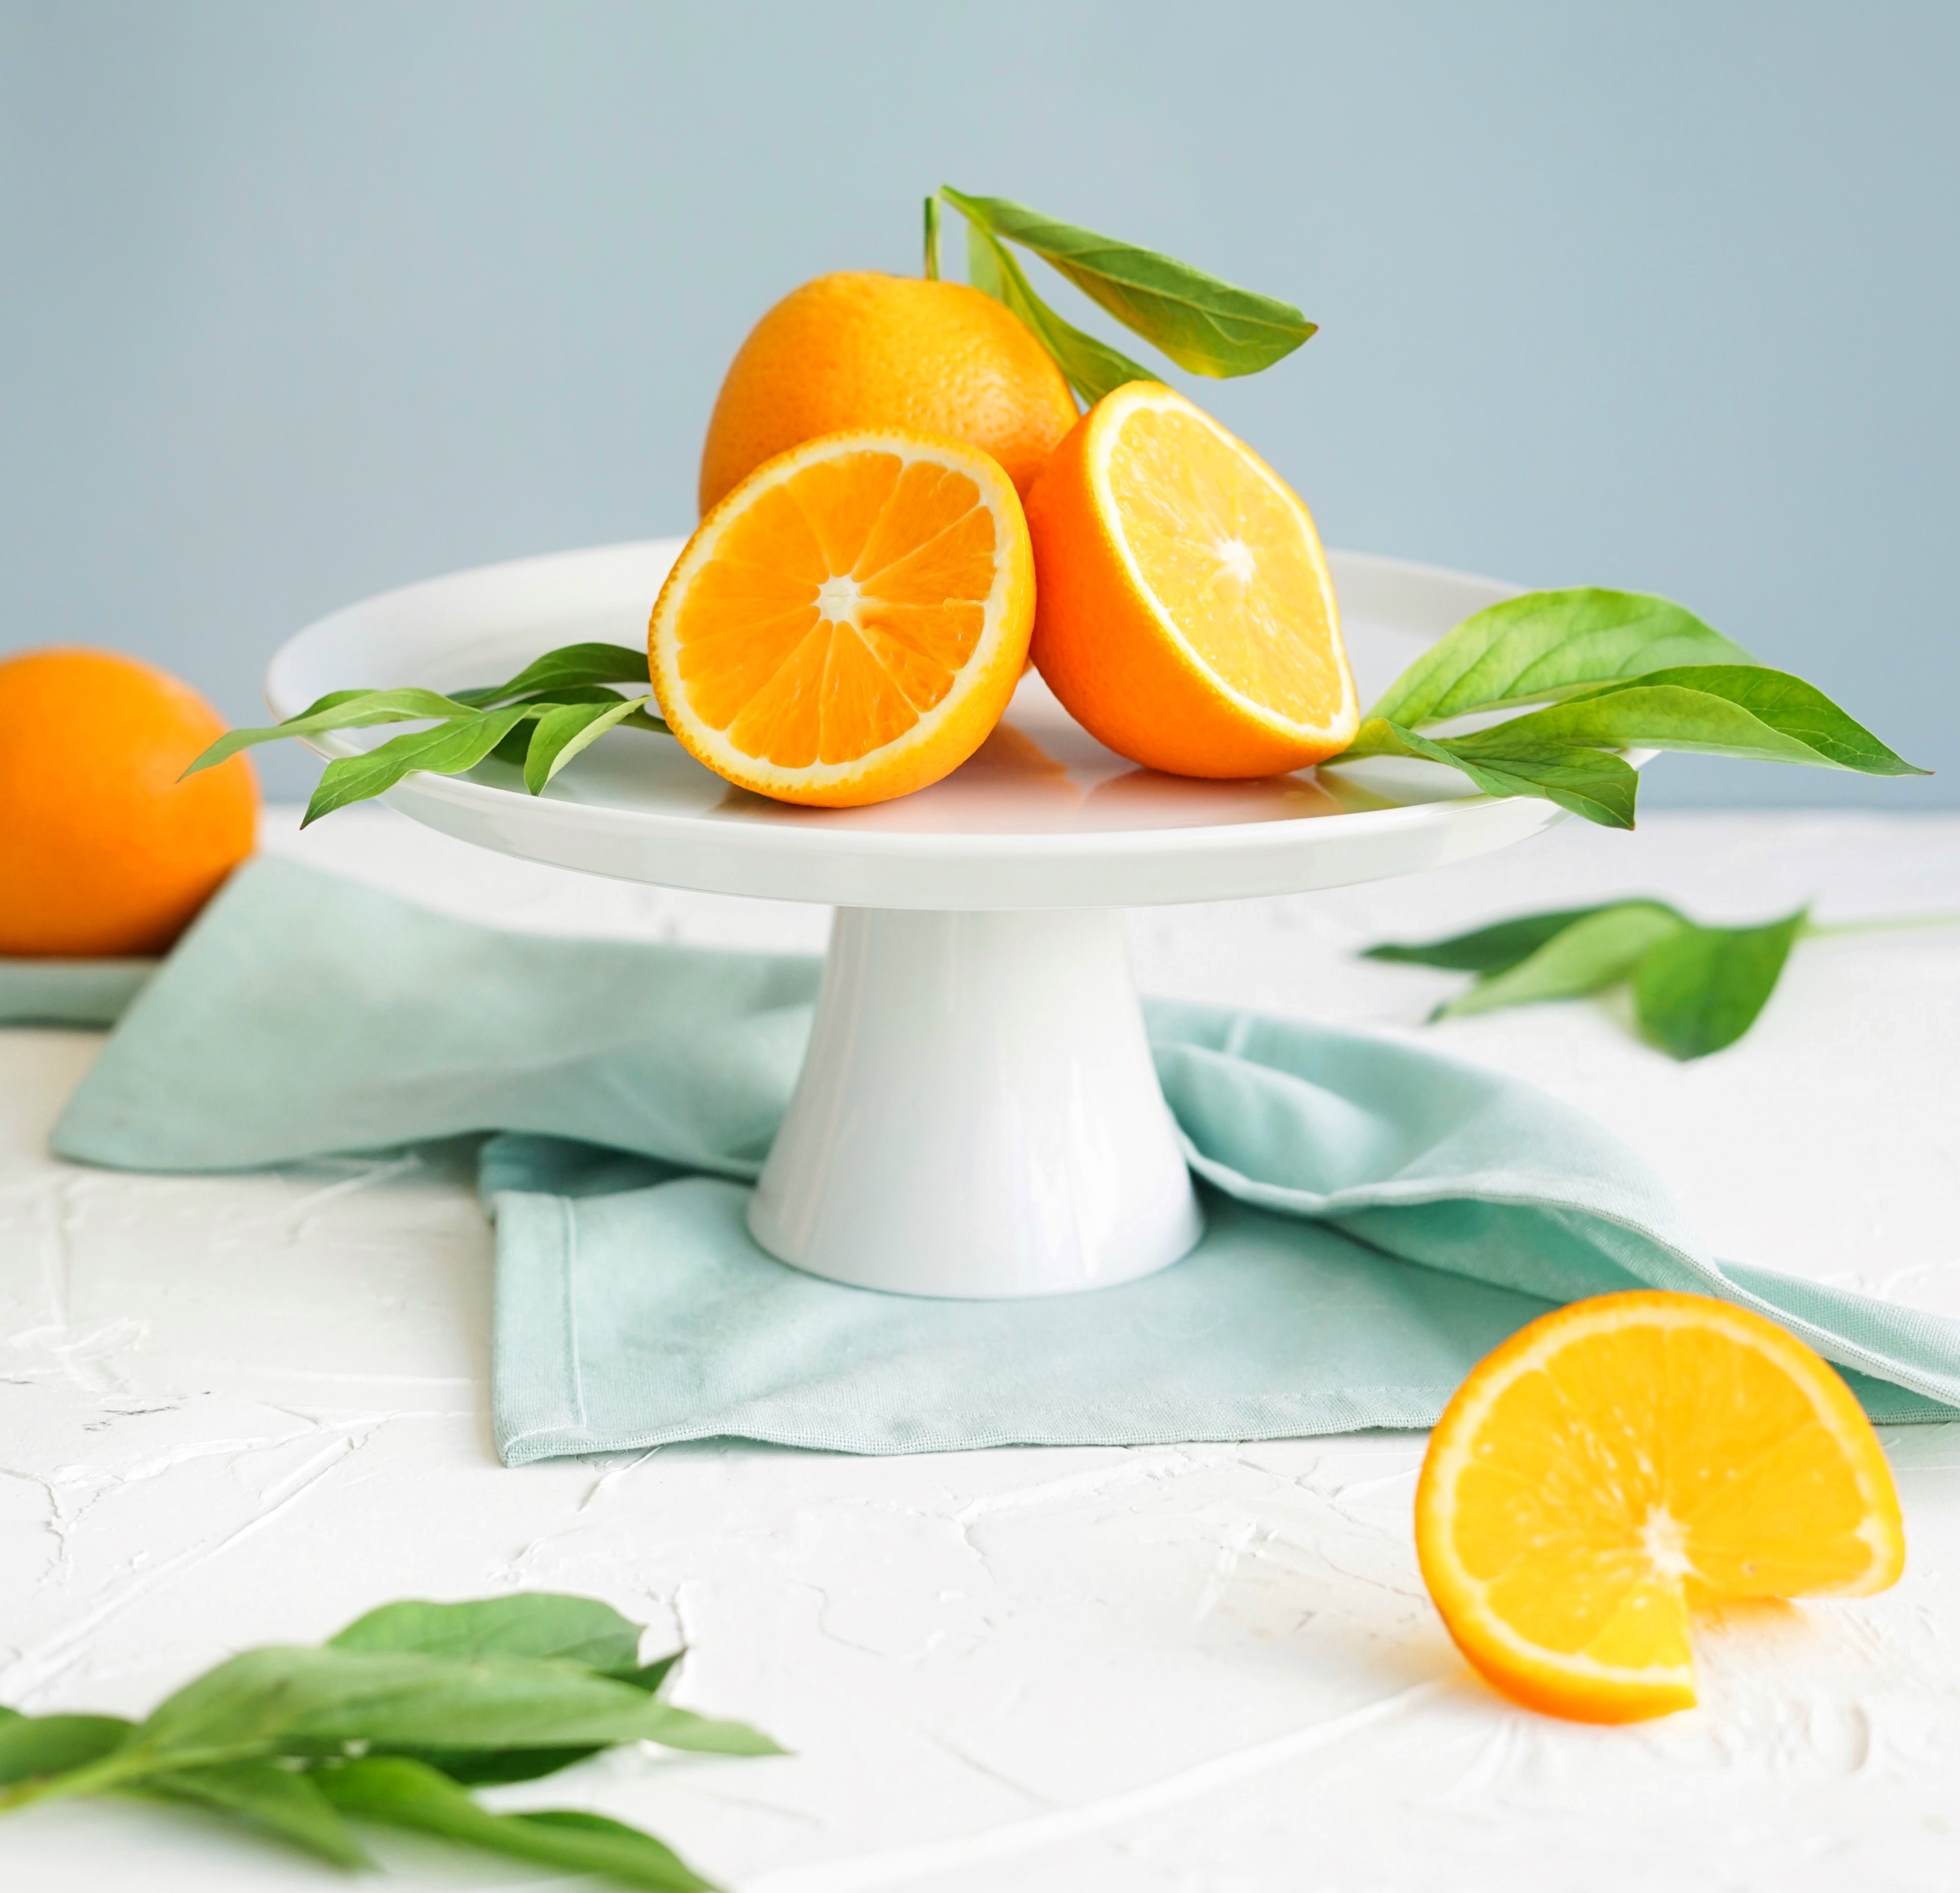 superfood list - oranges